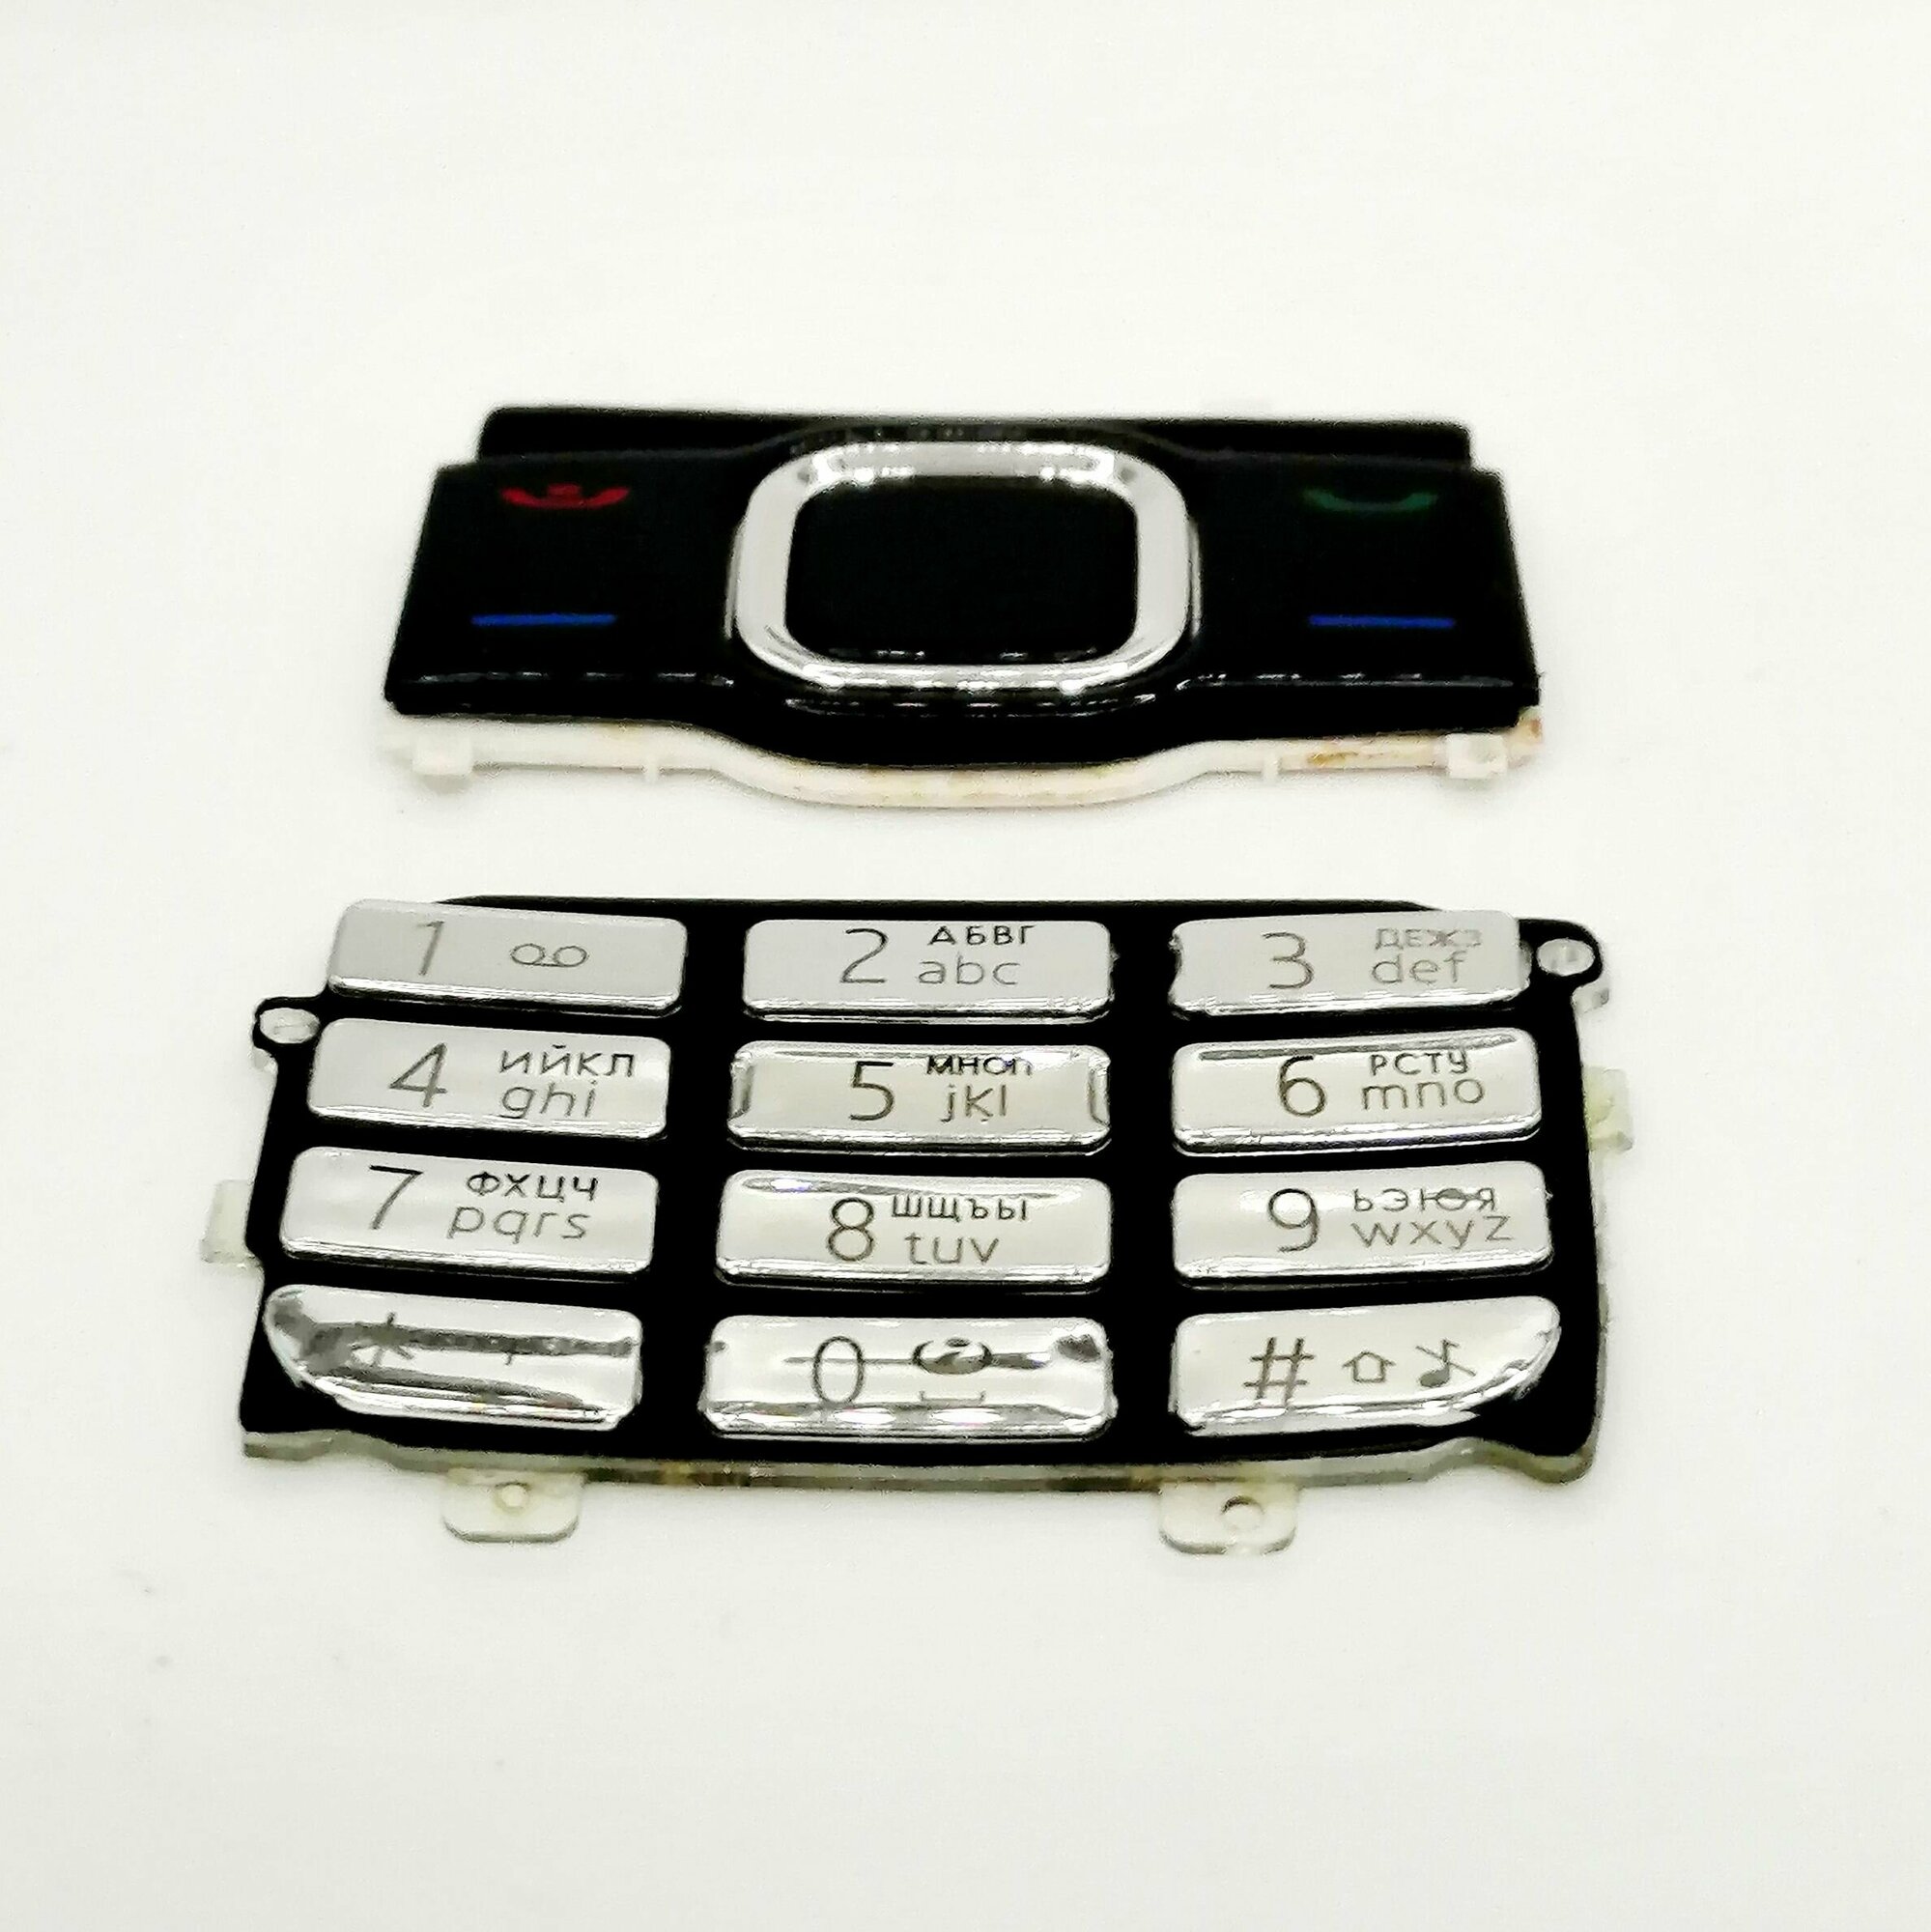 Клавиатура N 7610sn серебристо-черная